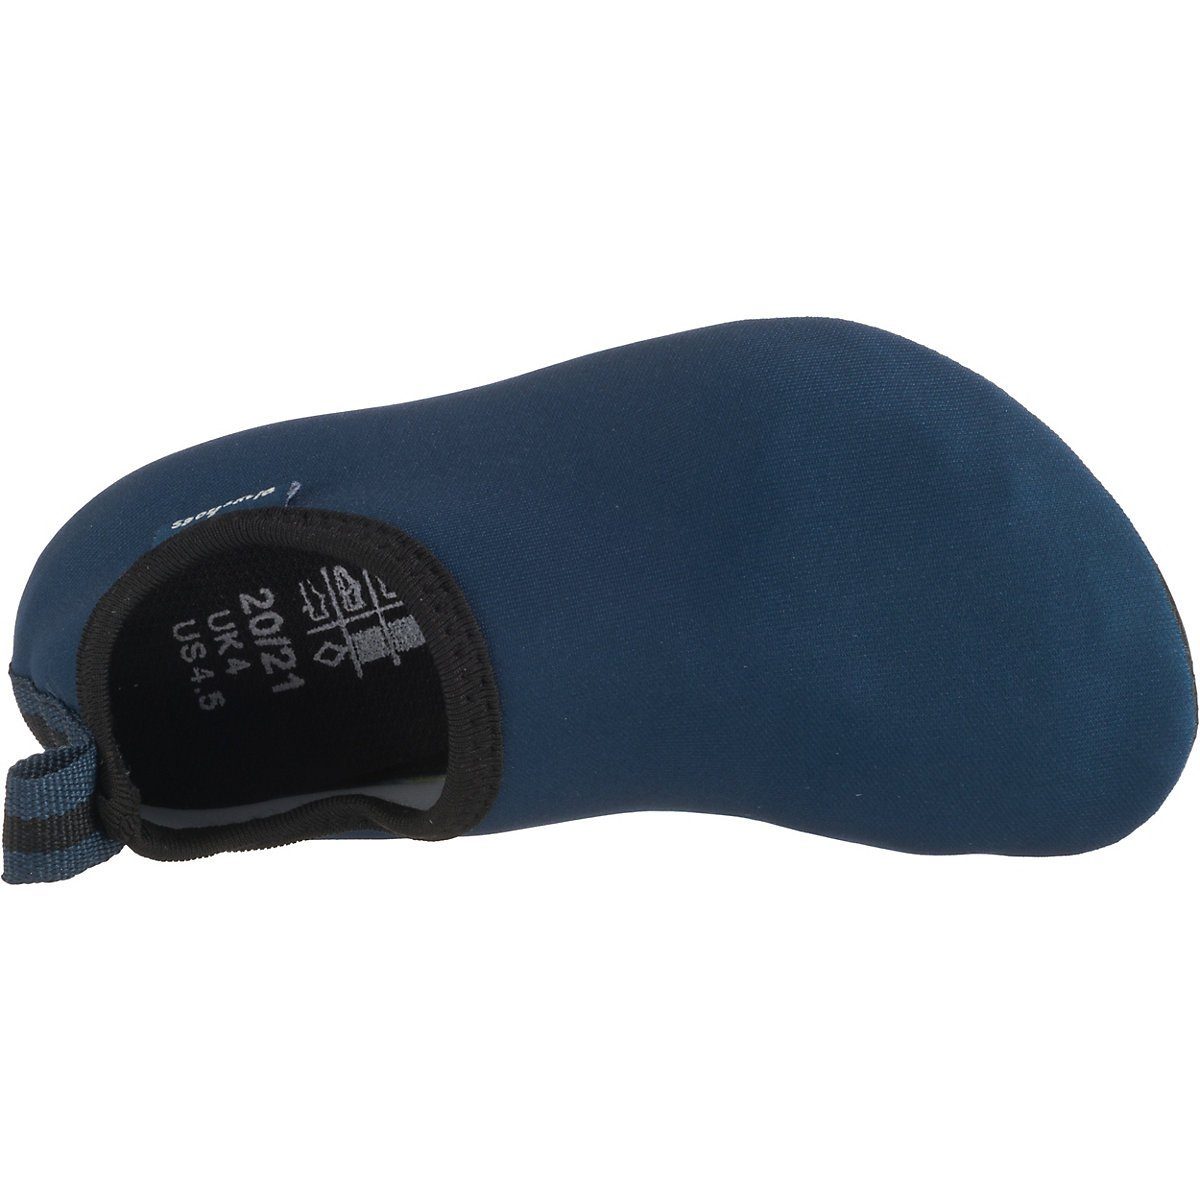 Playshoes Badeschuhe Wasserschuhe Schwimmschuhe, blau Badeschuh Passform, Sohle Barfuß-Schuh flexible Uni mit rutschhemmender